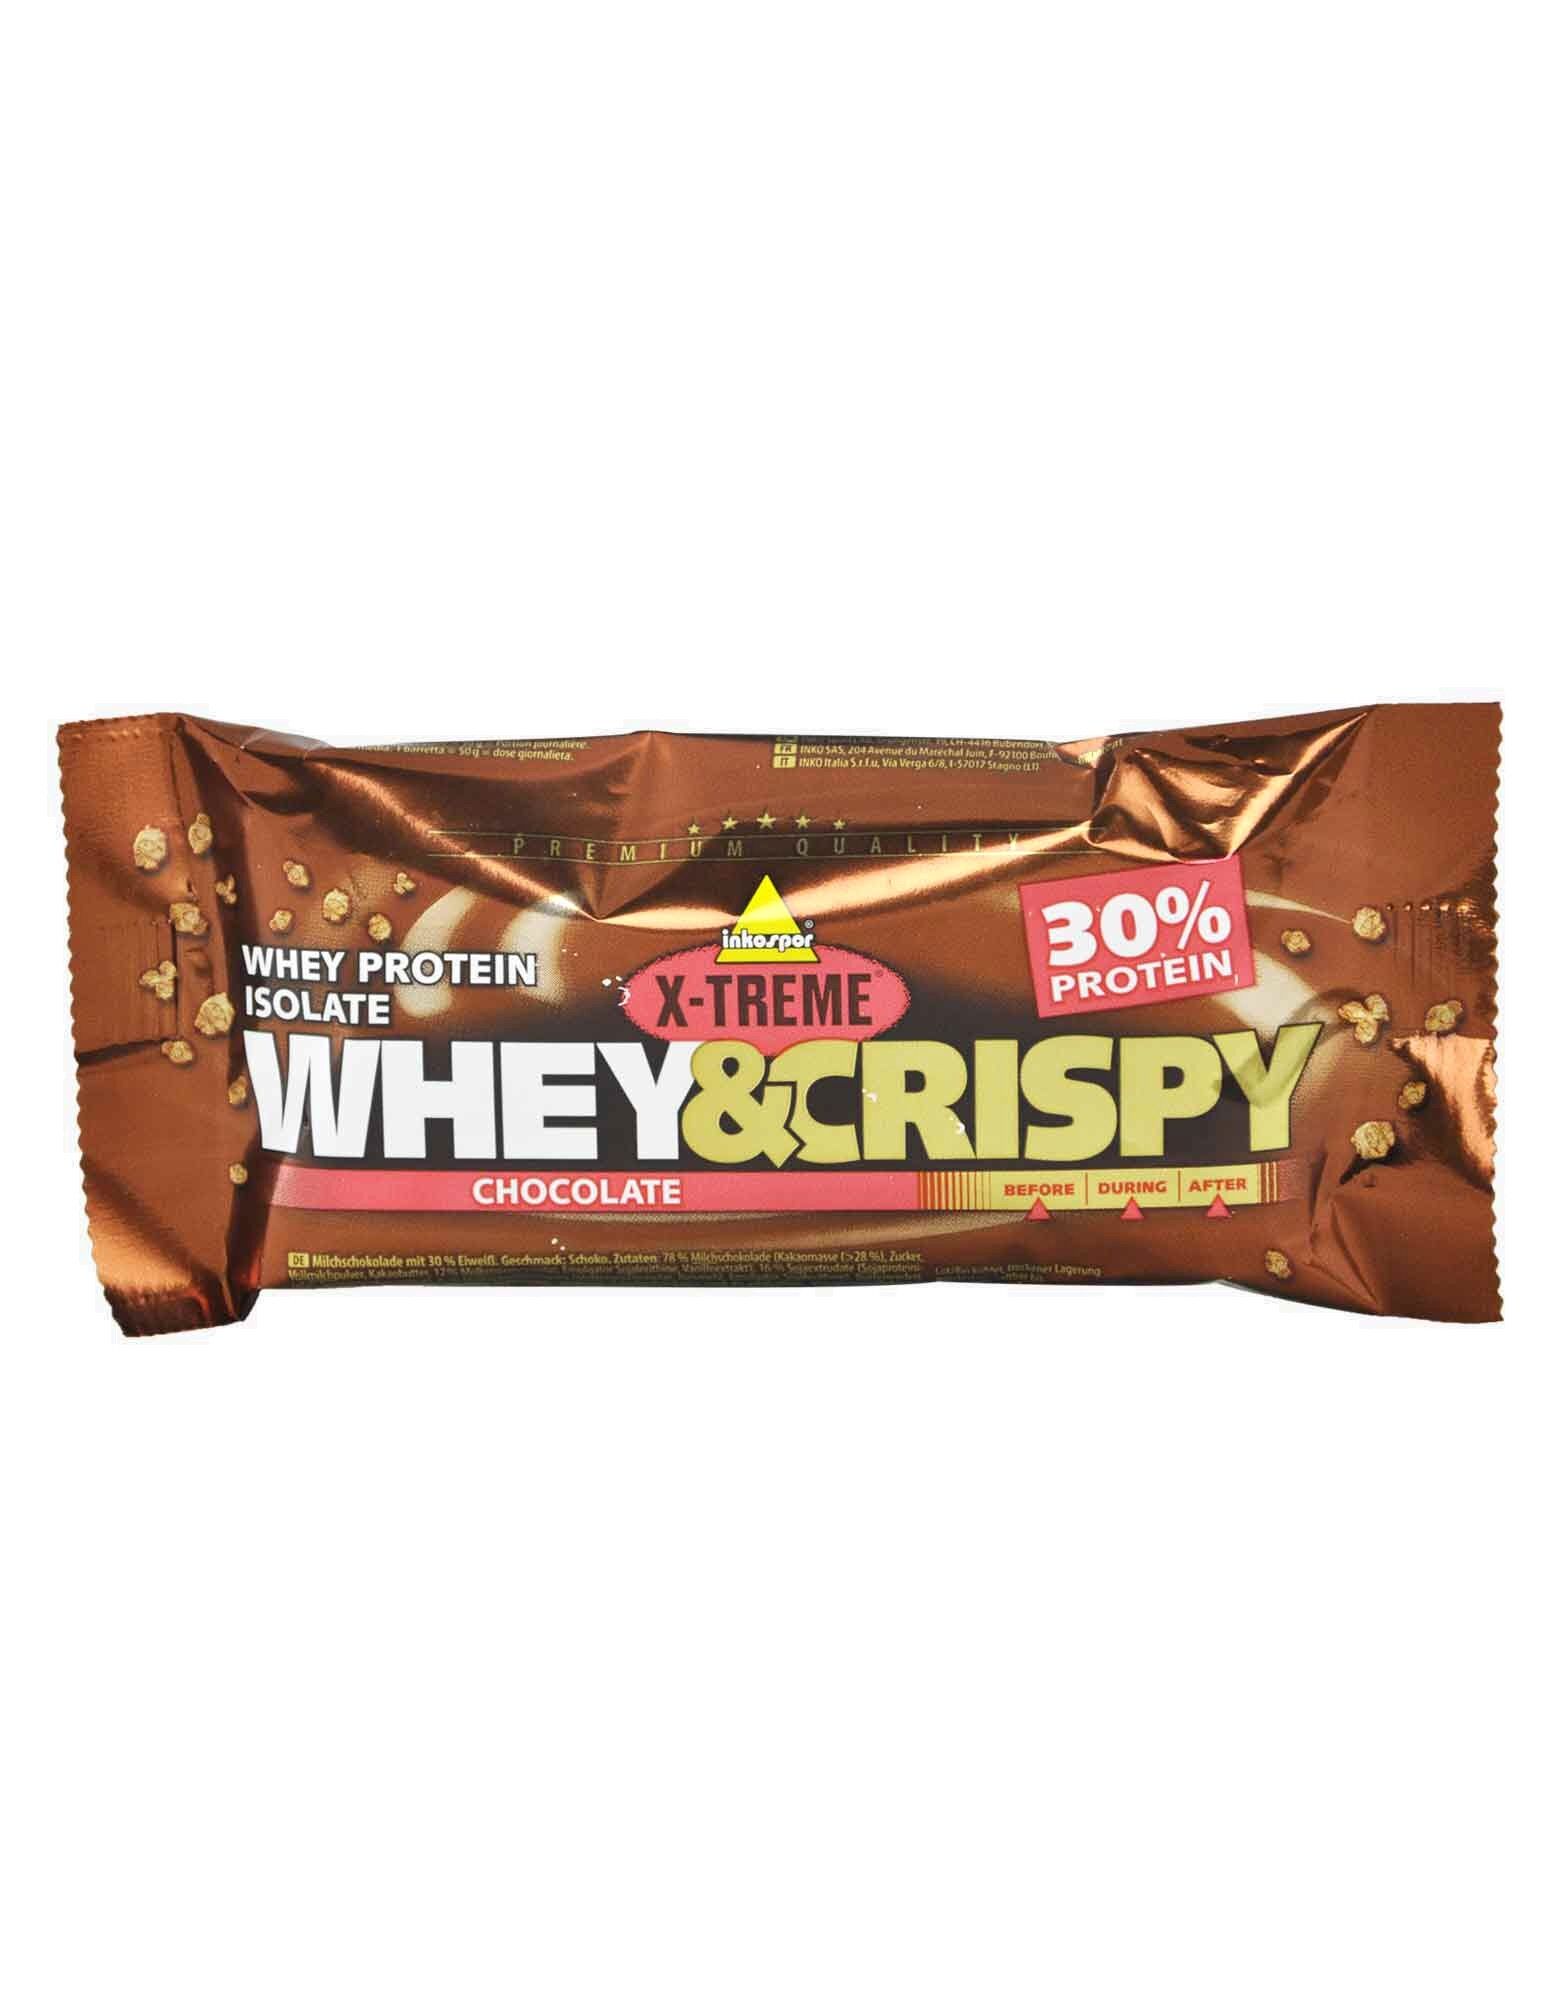 INKOSPOR X-Treme Whey&crispy 1 Barretta Da 50 Grammi Cioccolato Bianco